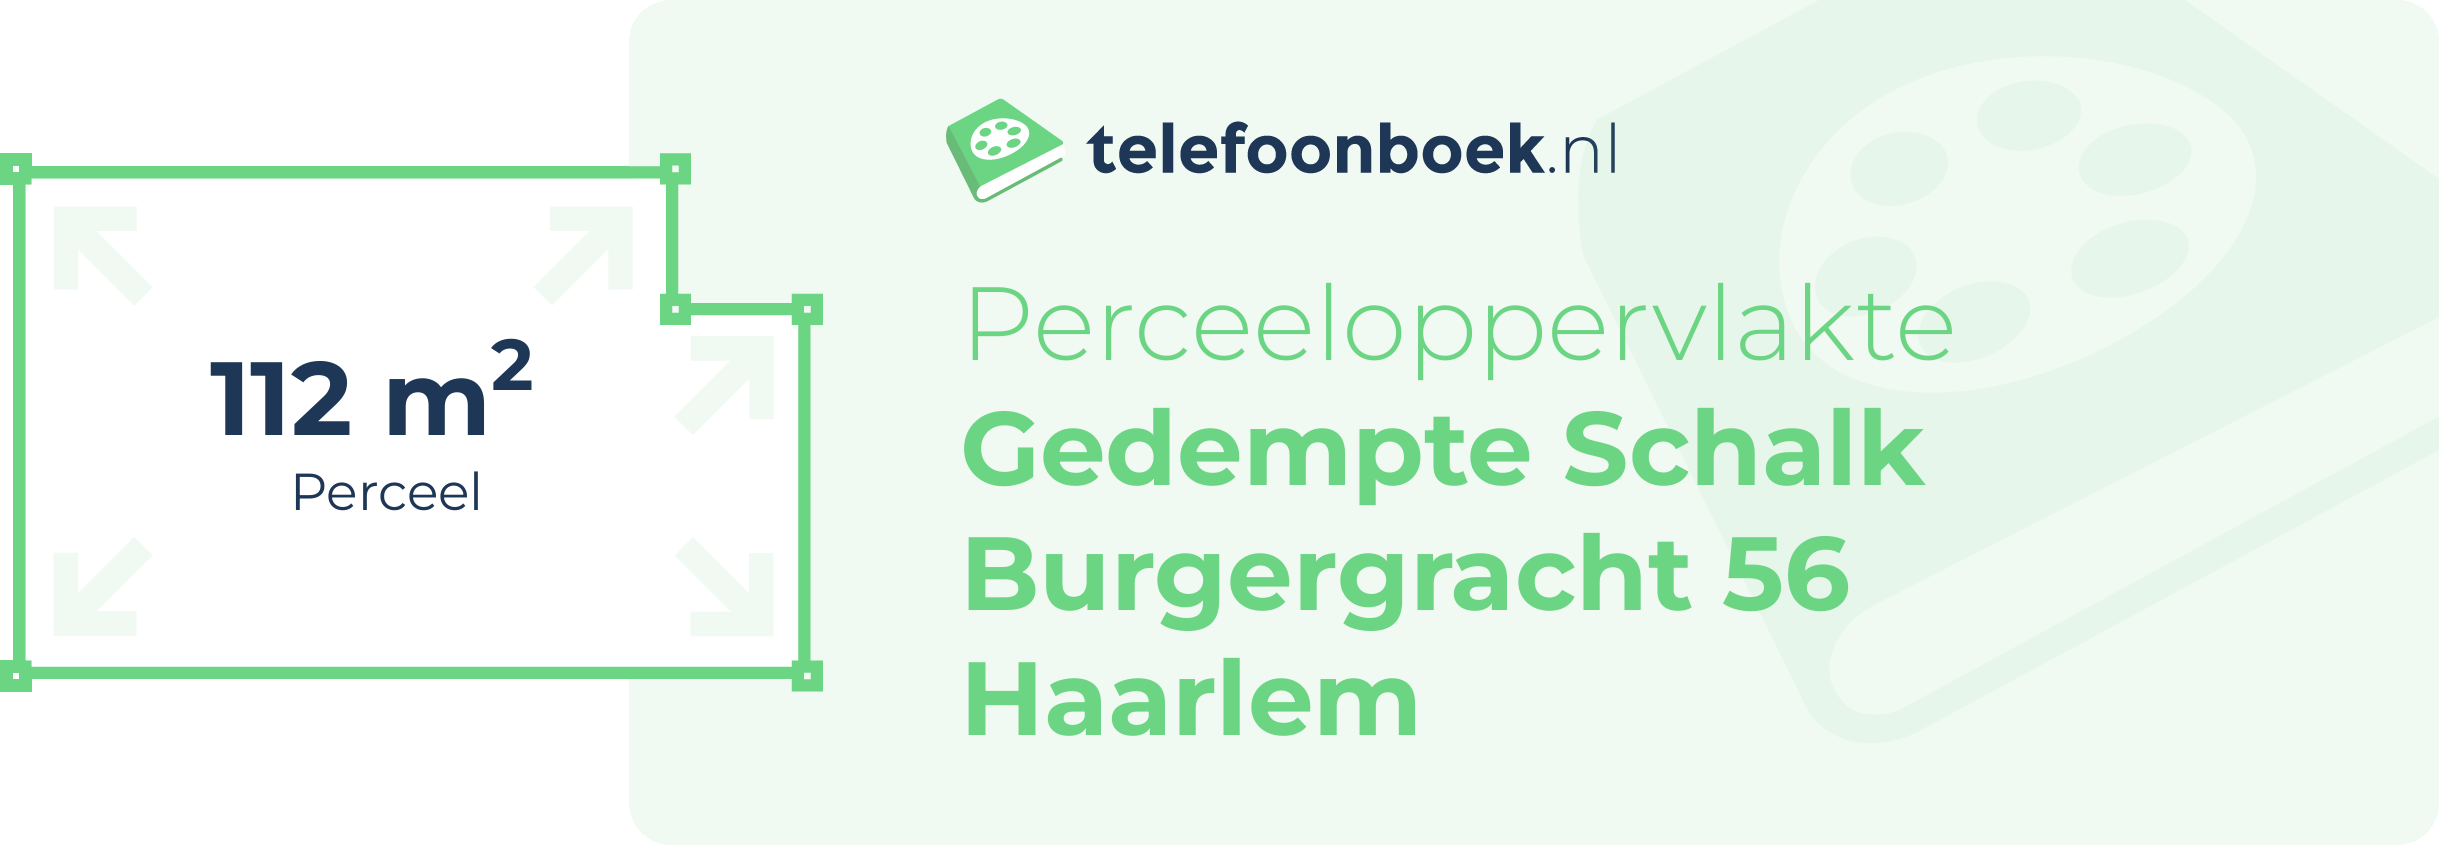 Perceeloppervlakte Gedempte Schalk Burgergracht 56 Haarlem